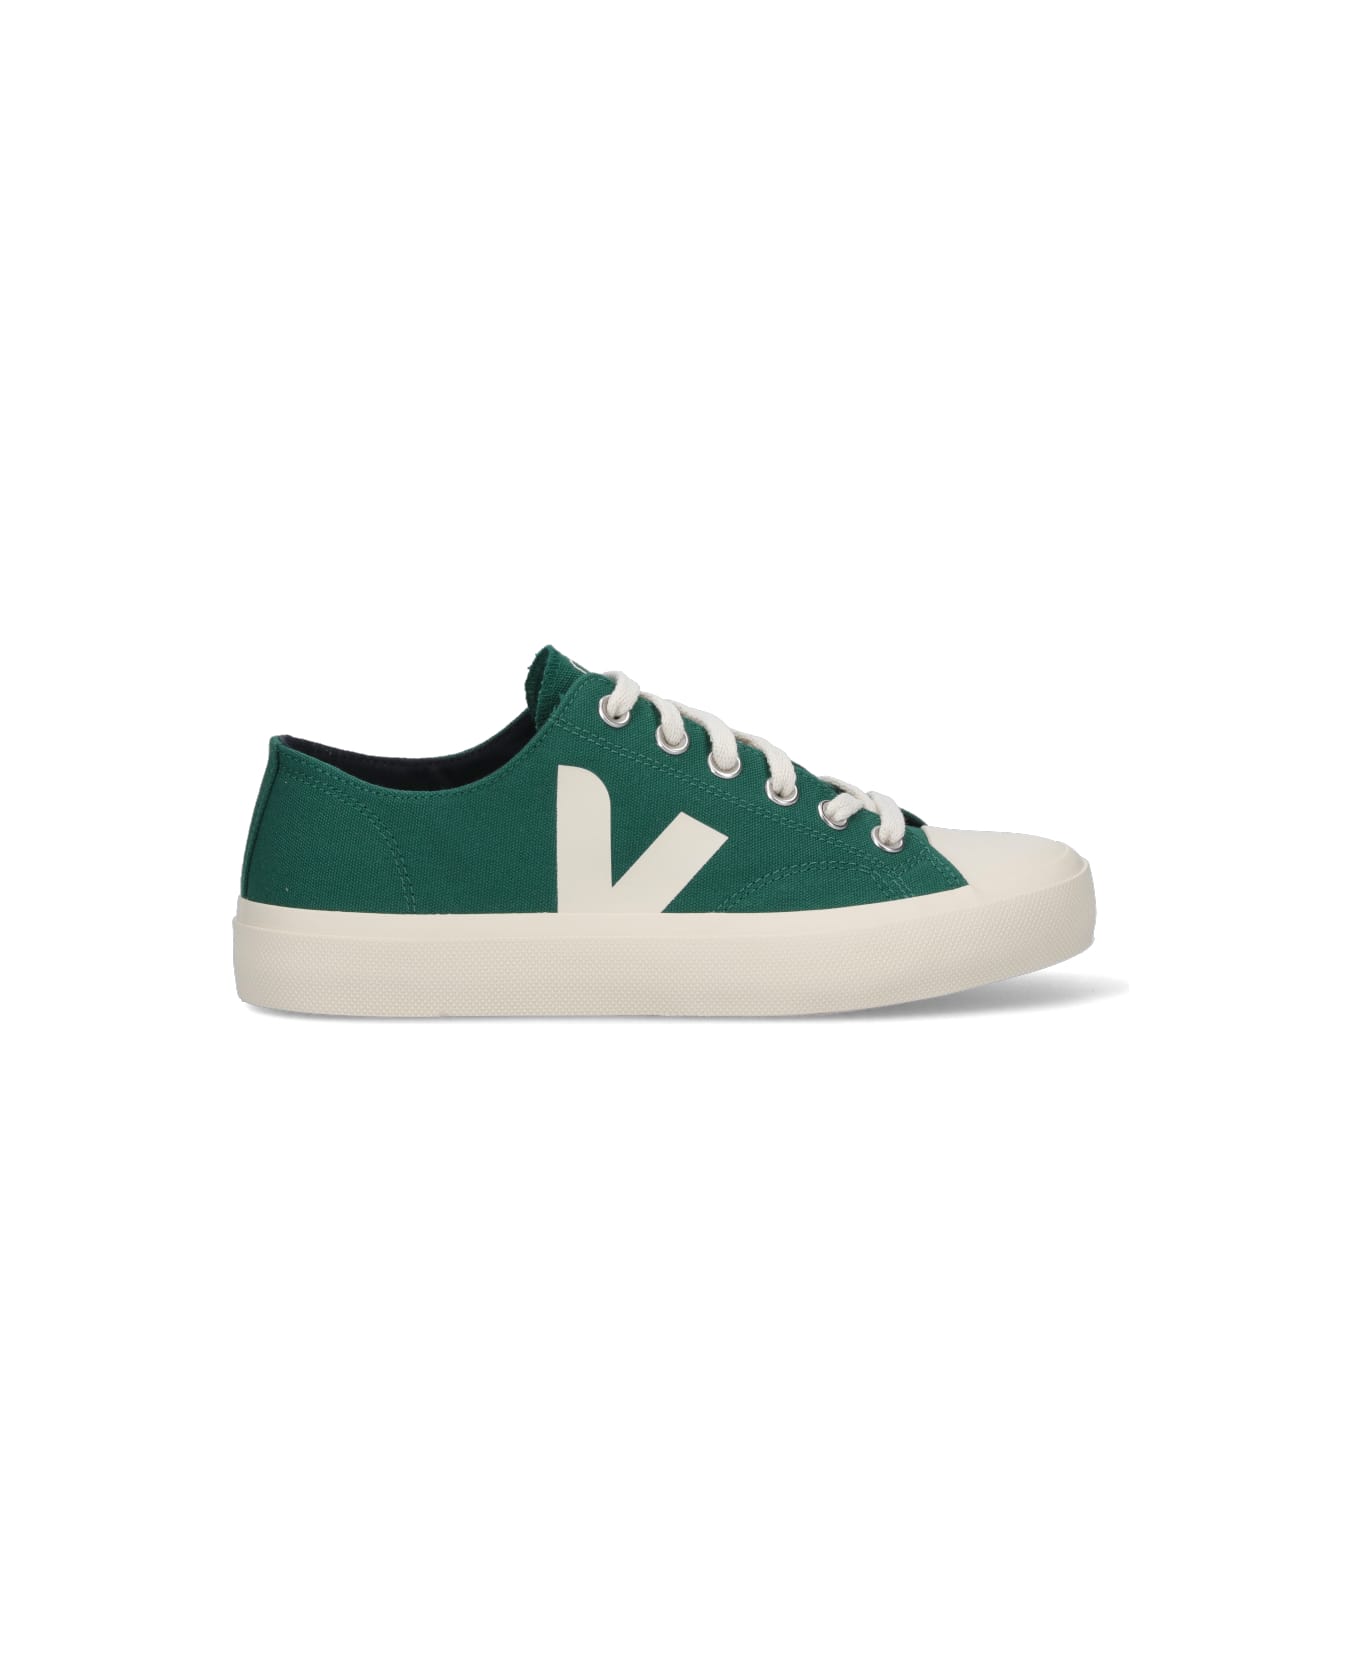 Veja Sneakers - Green